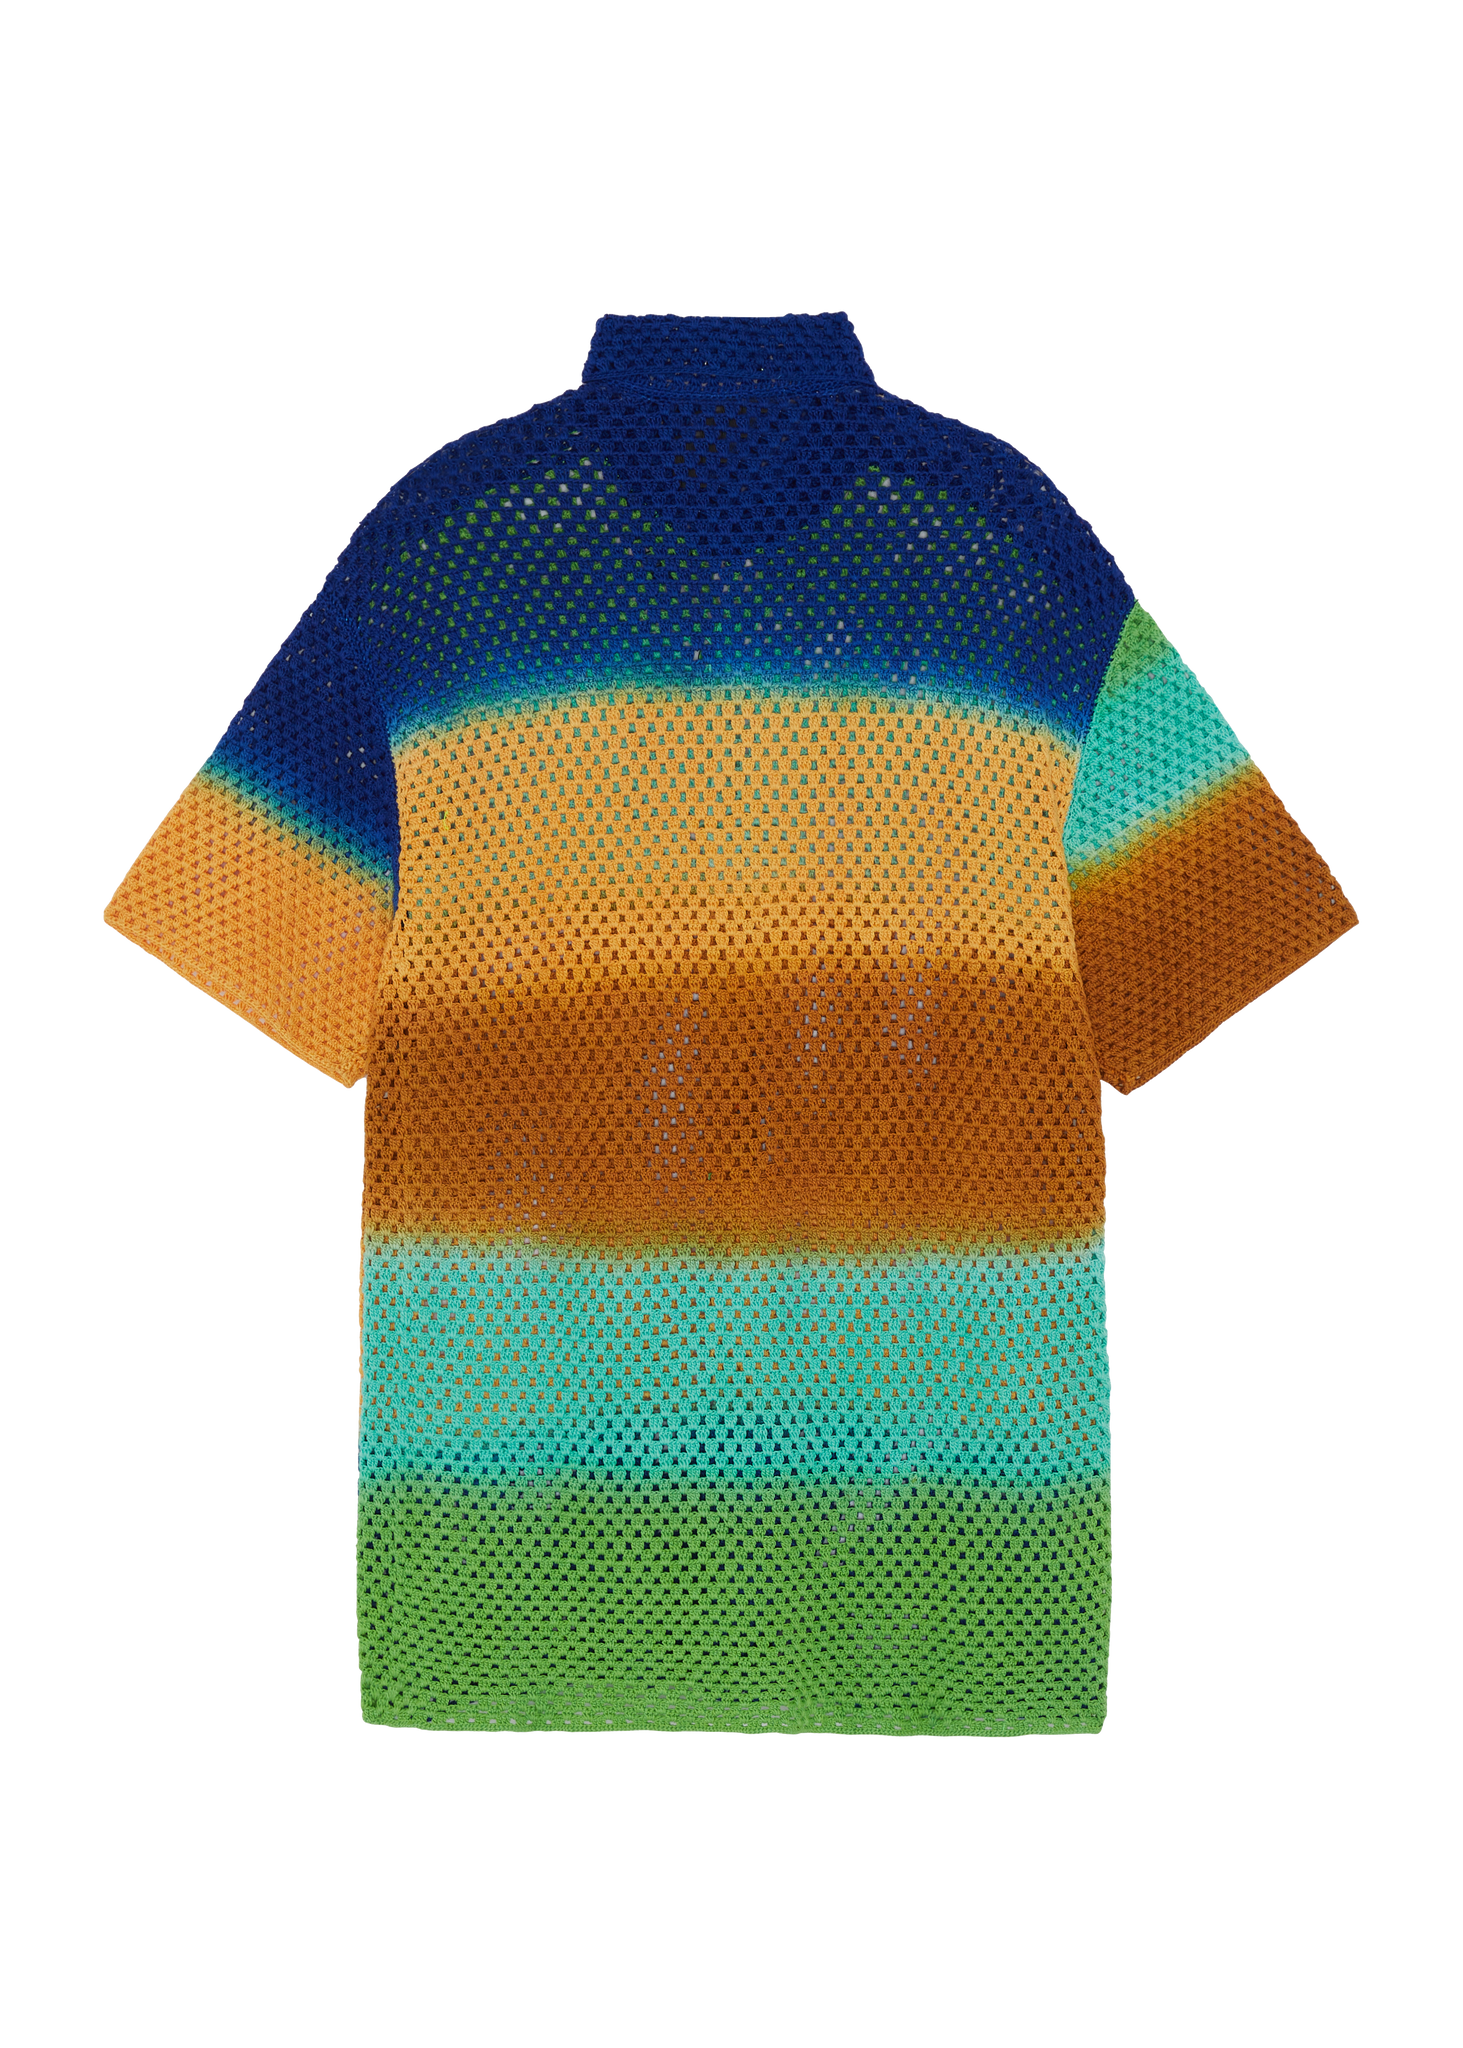 agr - wellness crochet shirt - packshot - back